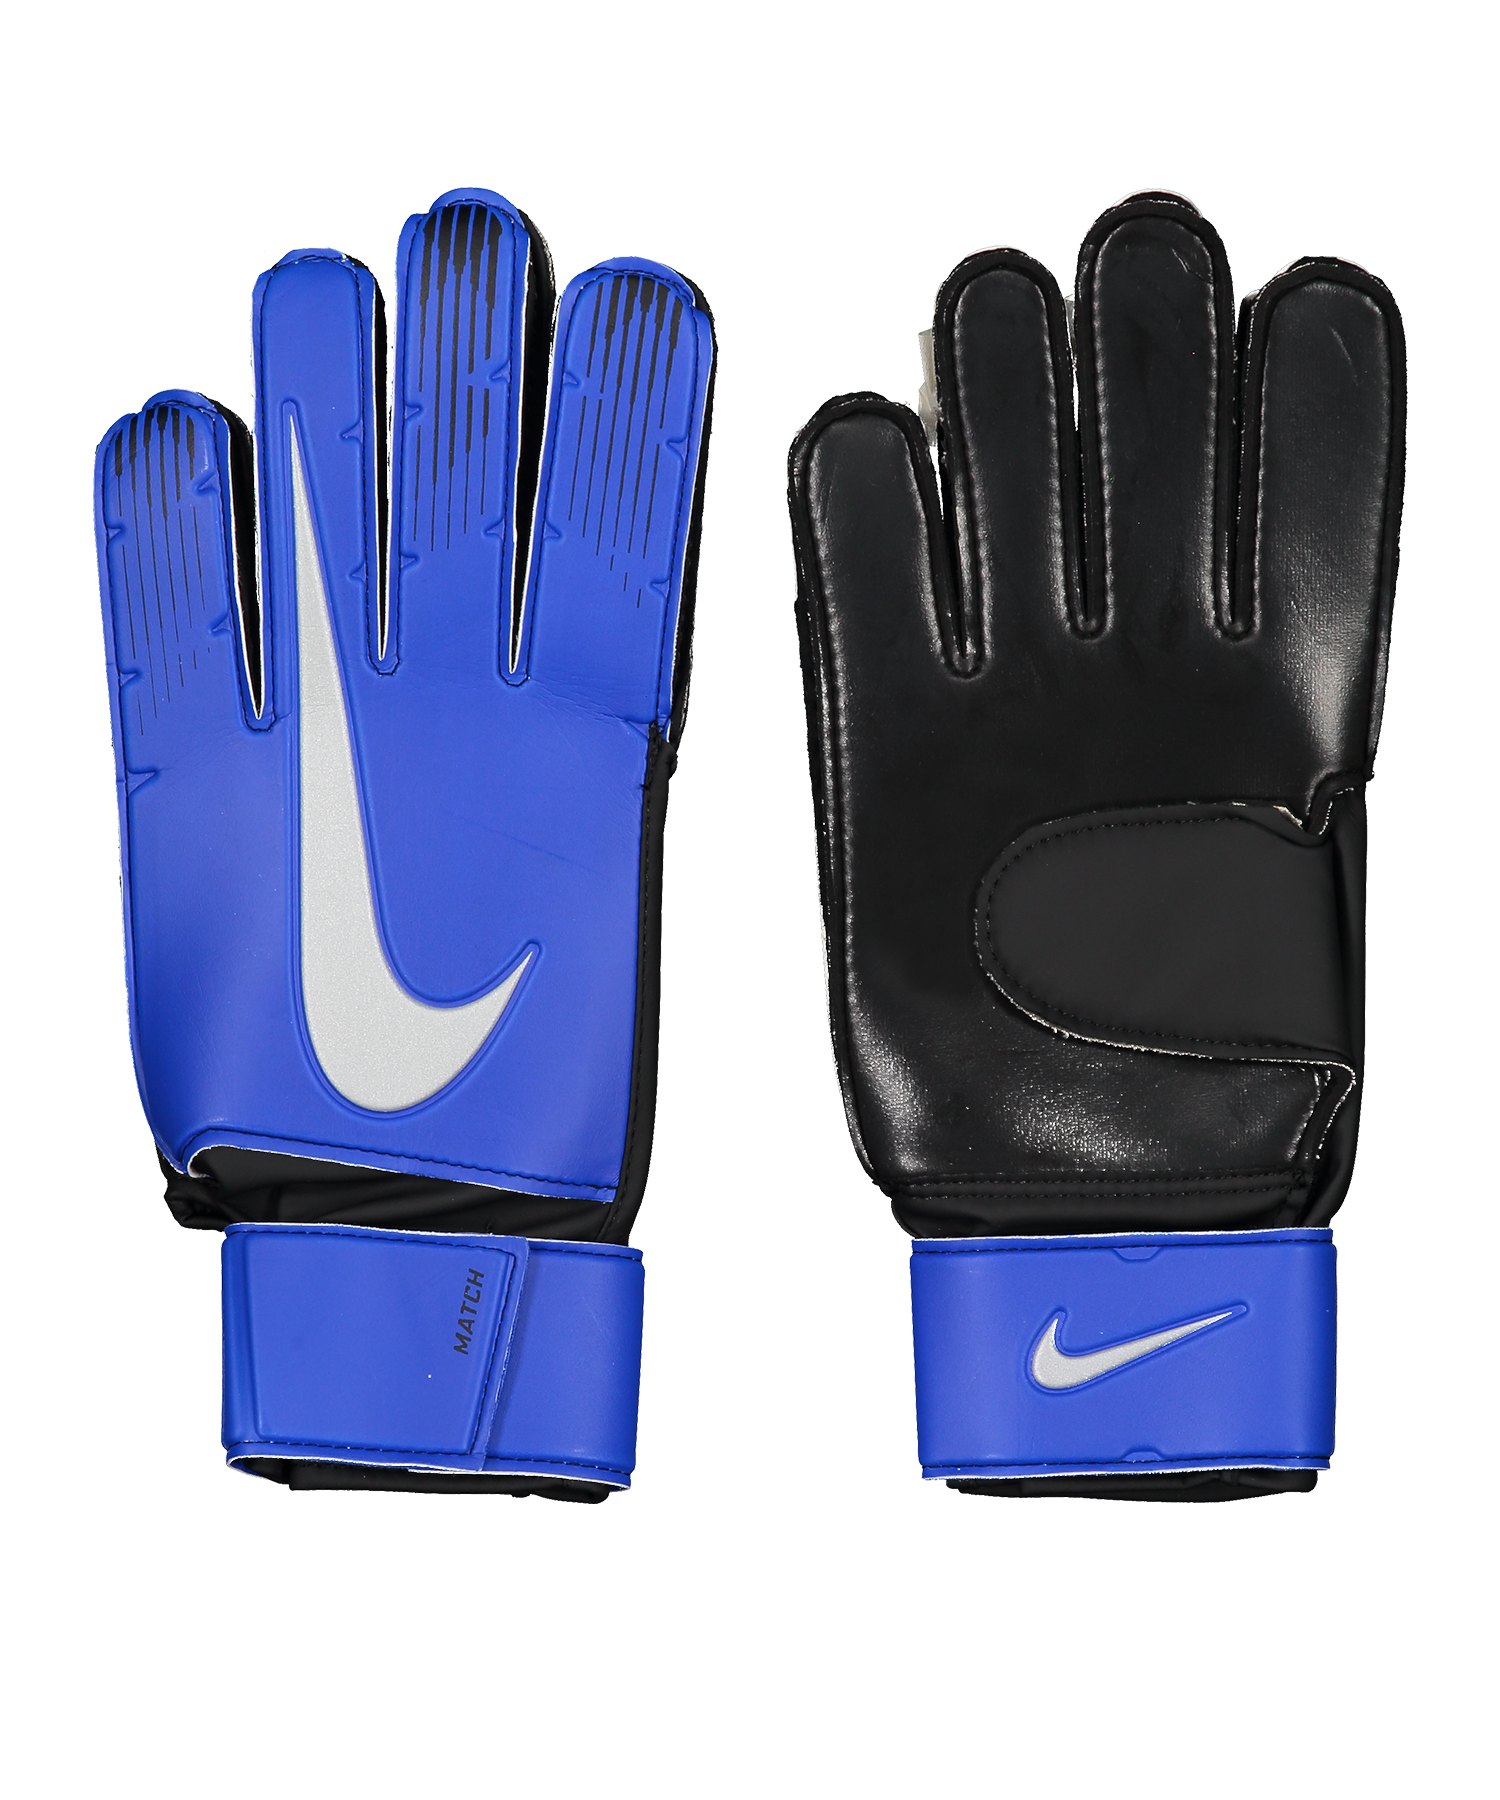 Nike Match Torwarthandschuh Blau F410 - blau